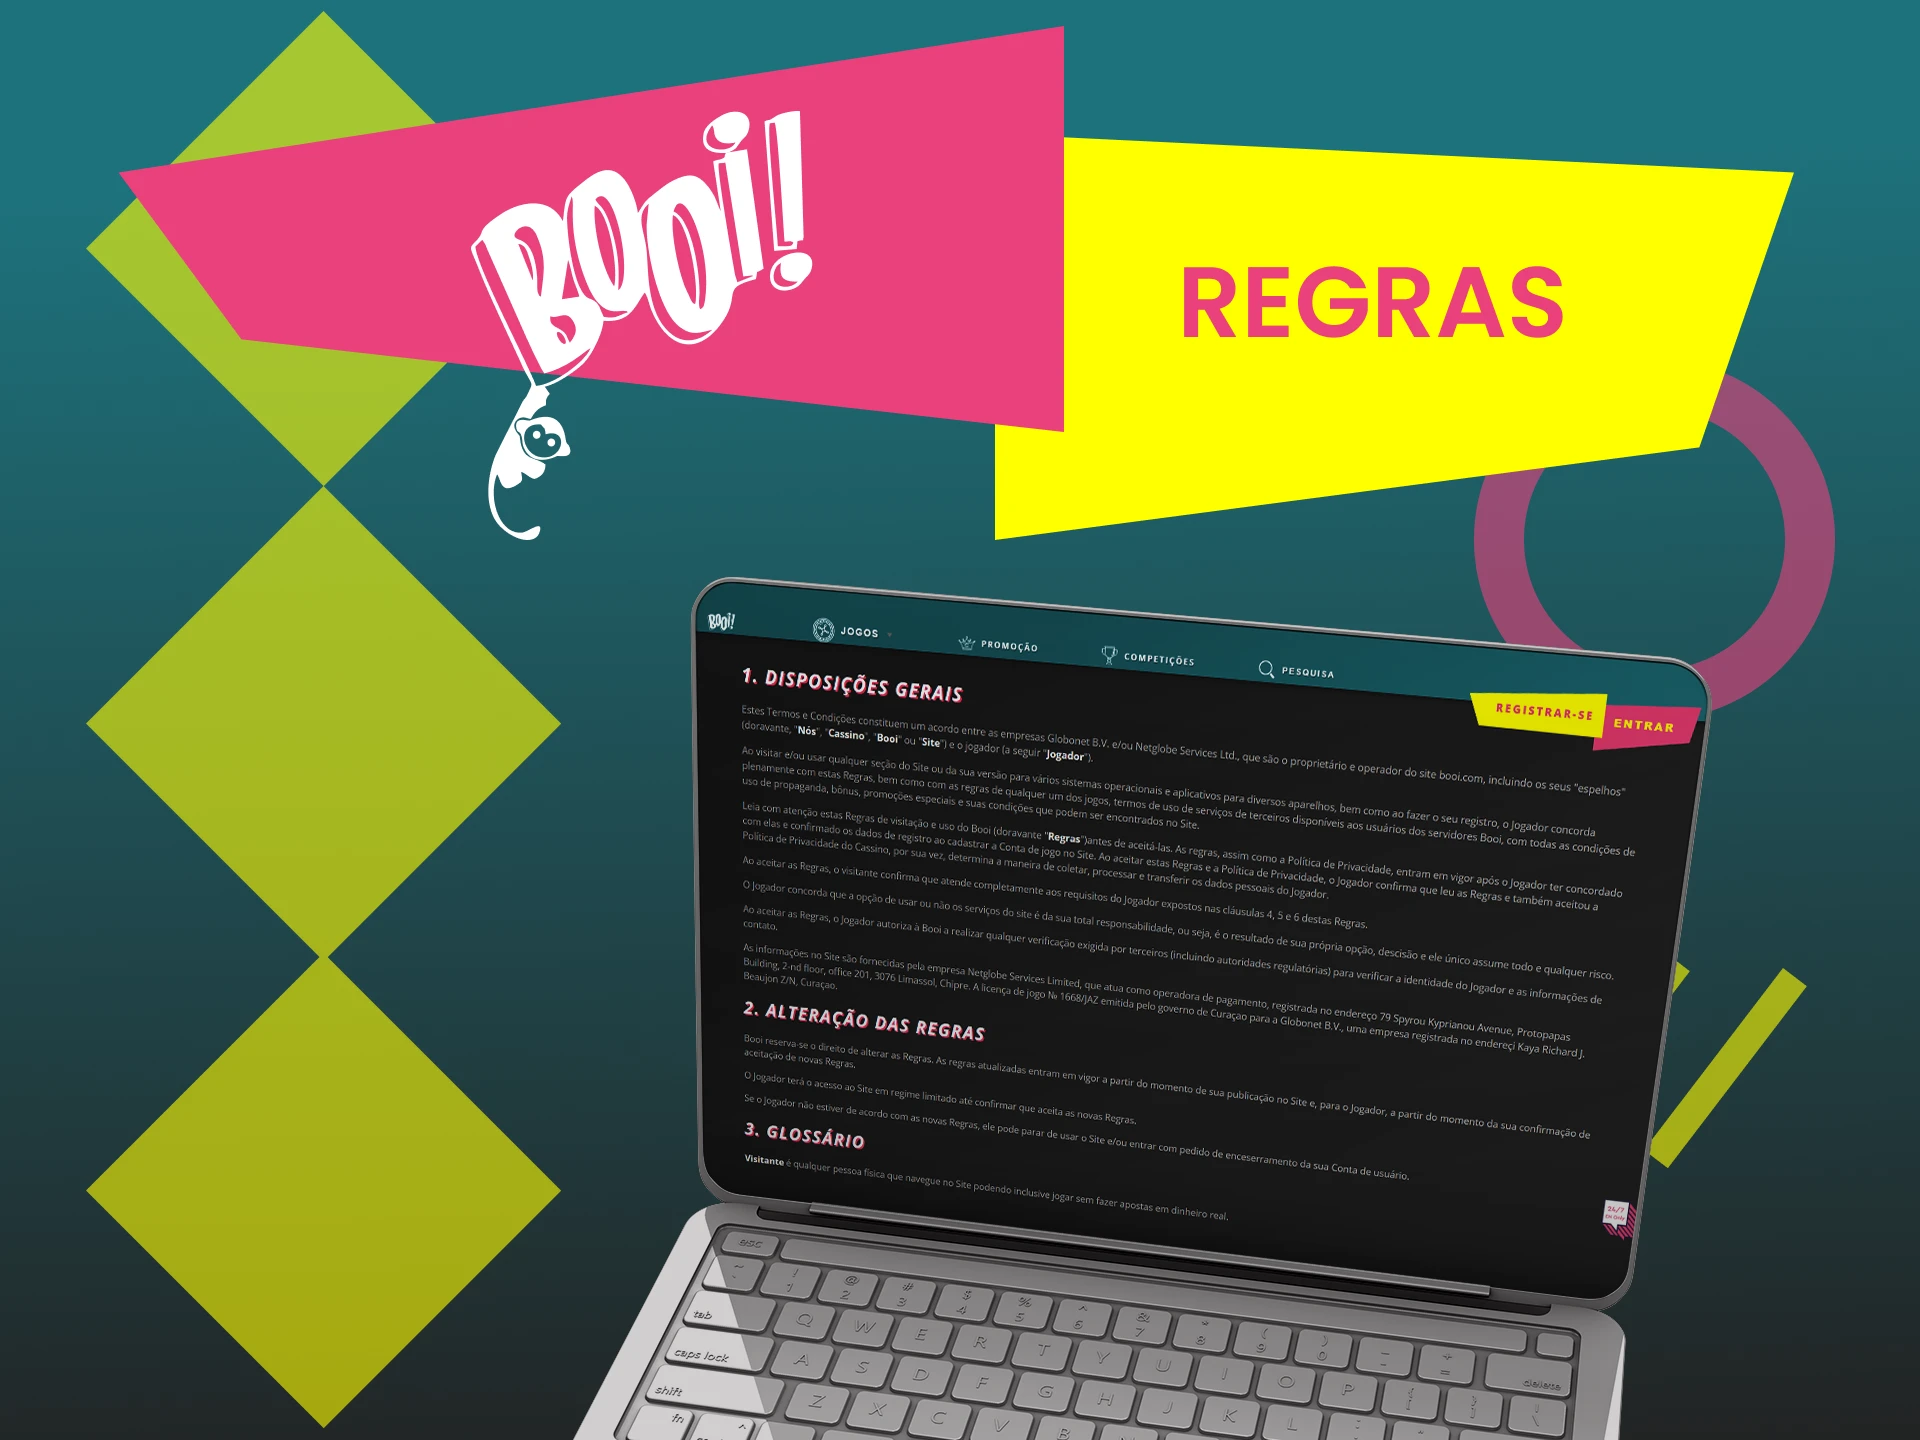 Uma lista das regras básicas da plataforma Booi no Brasil.